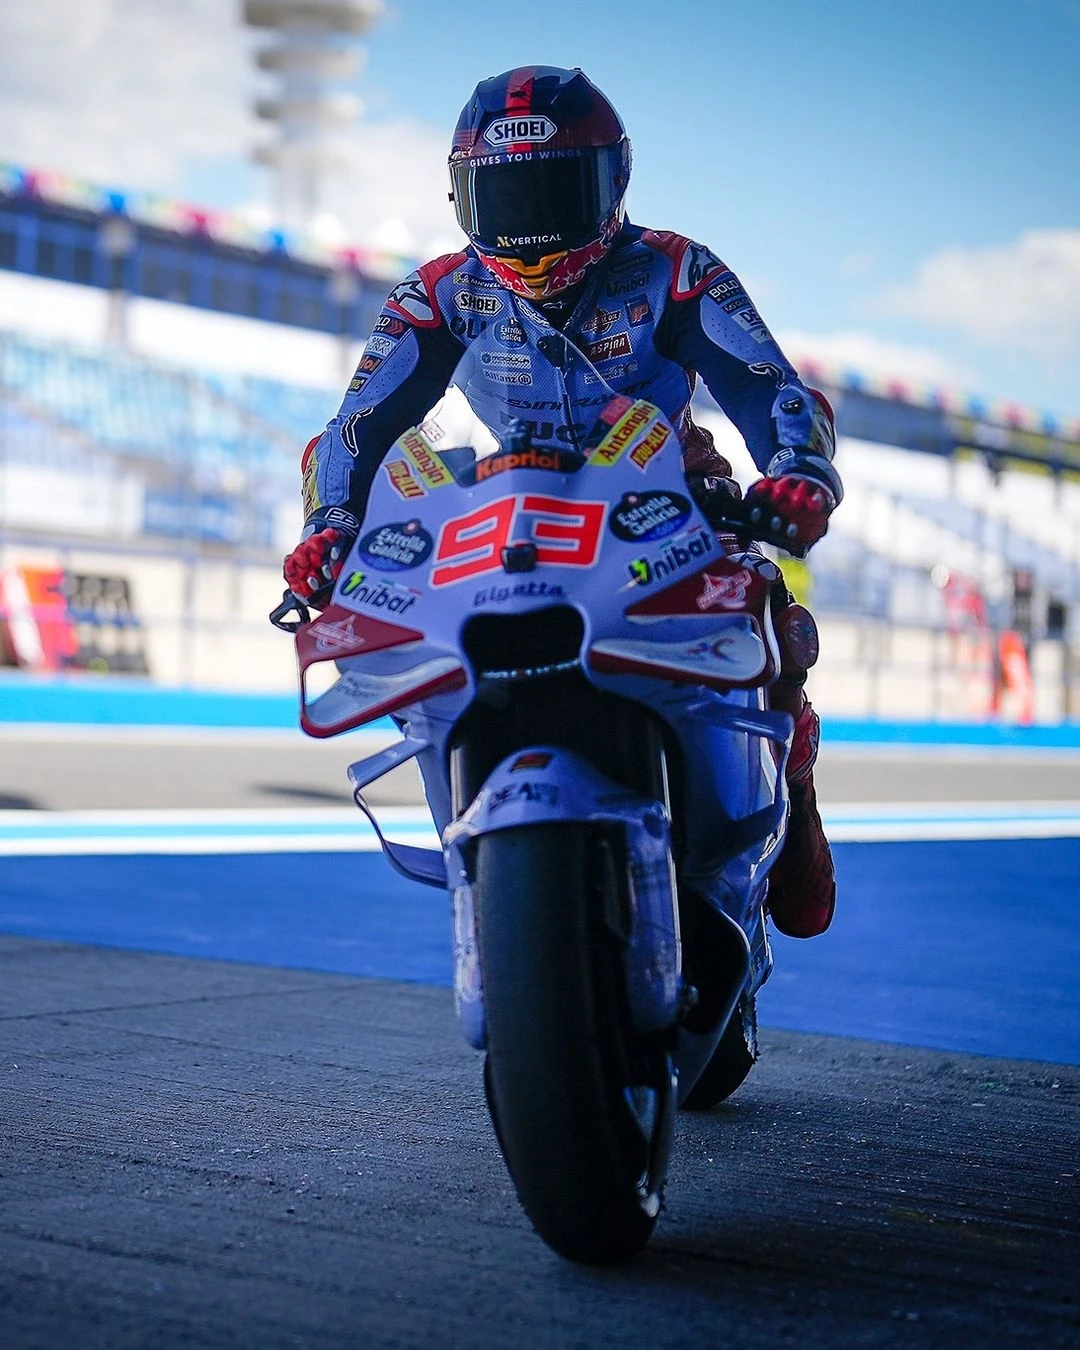 MotoGP Jerez Testi: Bu motosikletten pozitif bir şey alamayız gallery image 1